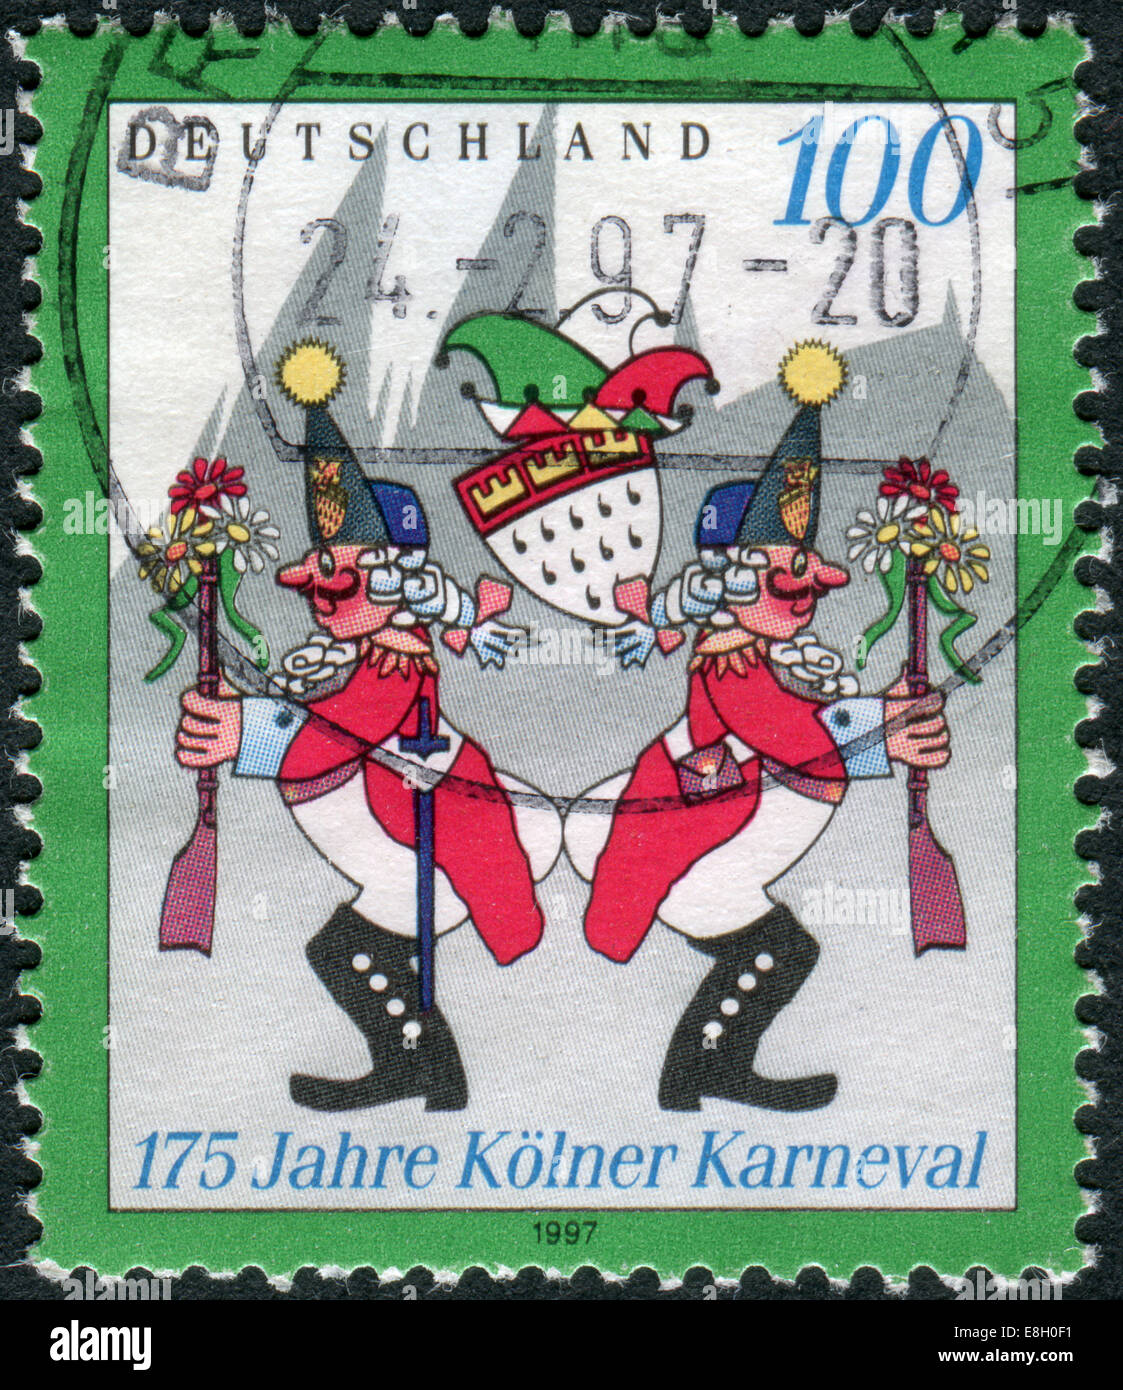 Briefmarke gedruckt in Deutschland, gewidmet dem 175. Jahrestag des Kölner Karnevals, zeigt Karnevalisten auf die "Wibbeln" Stockfoto